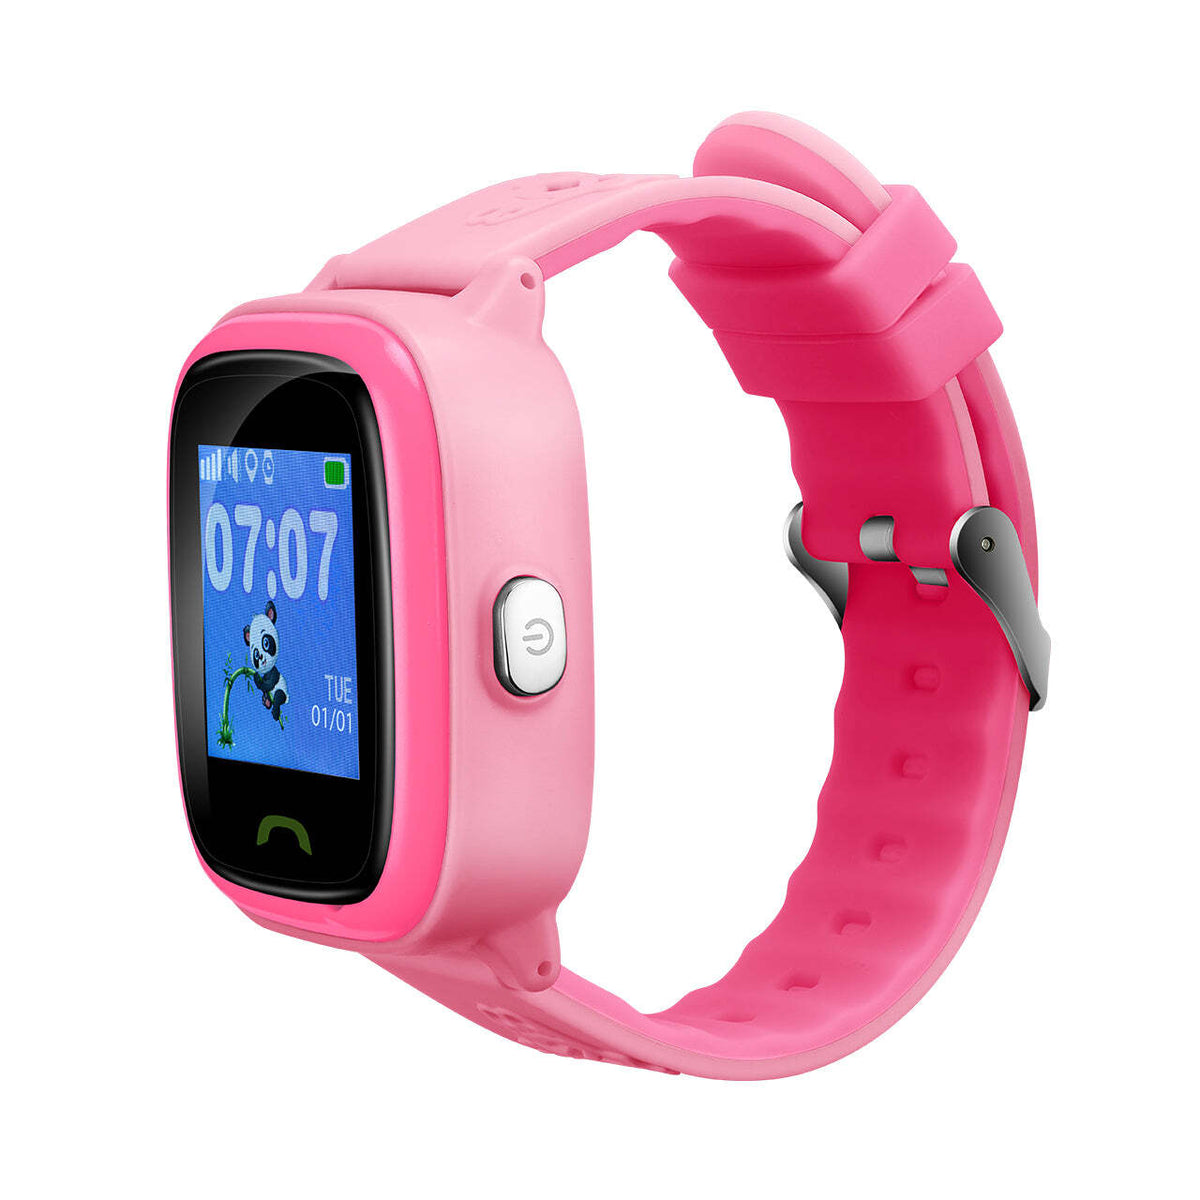 Detské smart hodinky Canyon Polly Kids, GPS + GSM, ružová